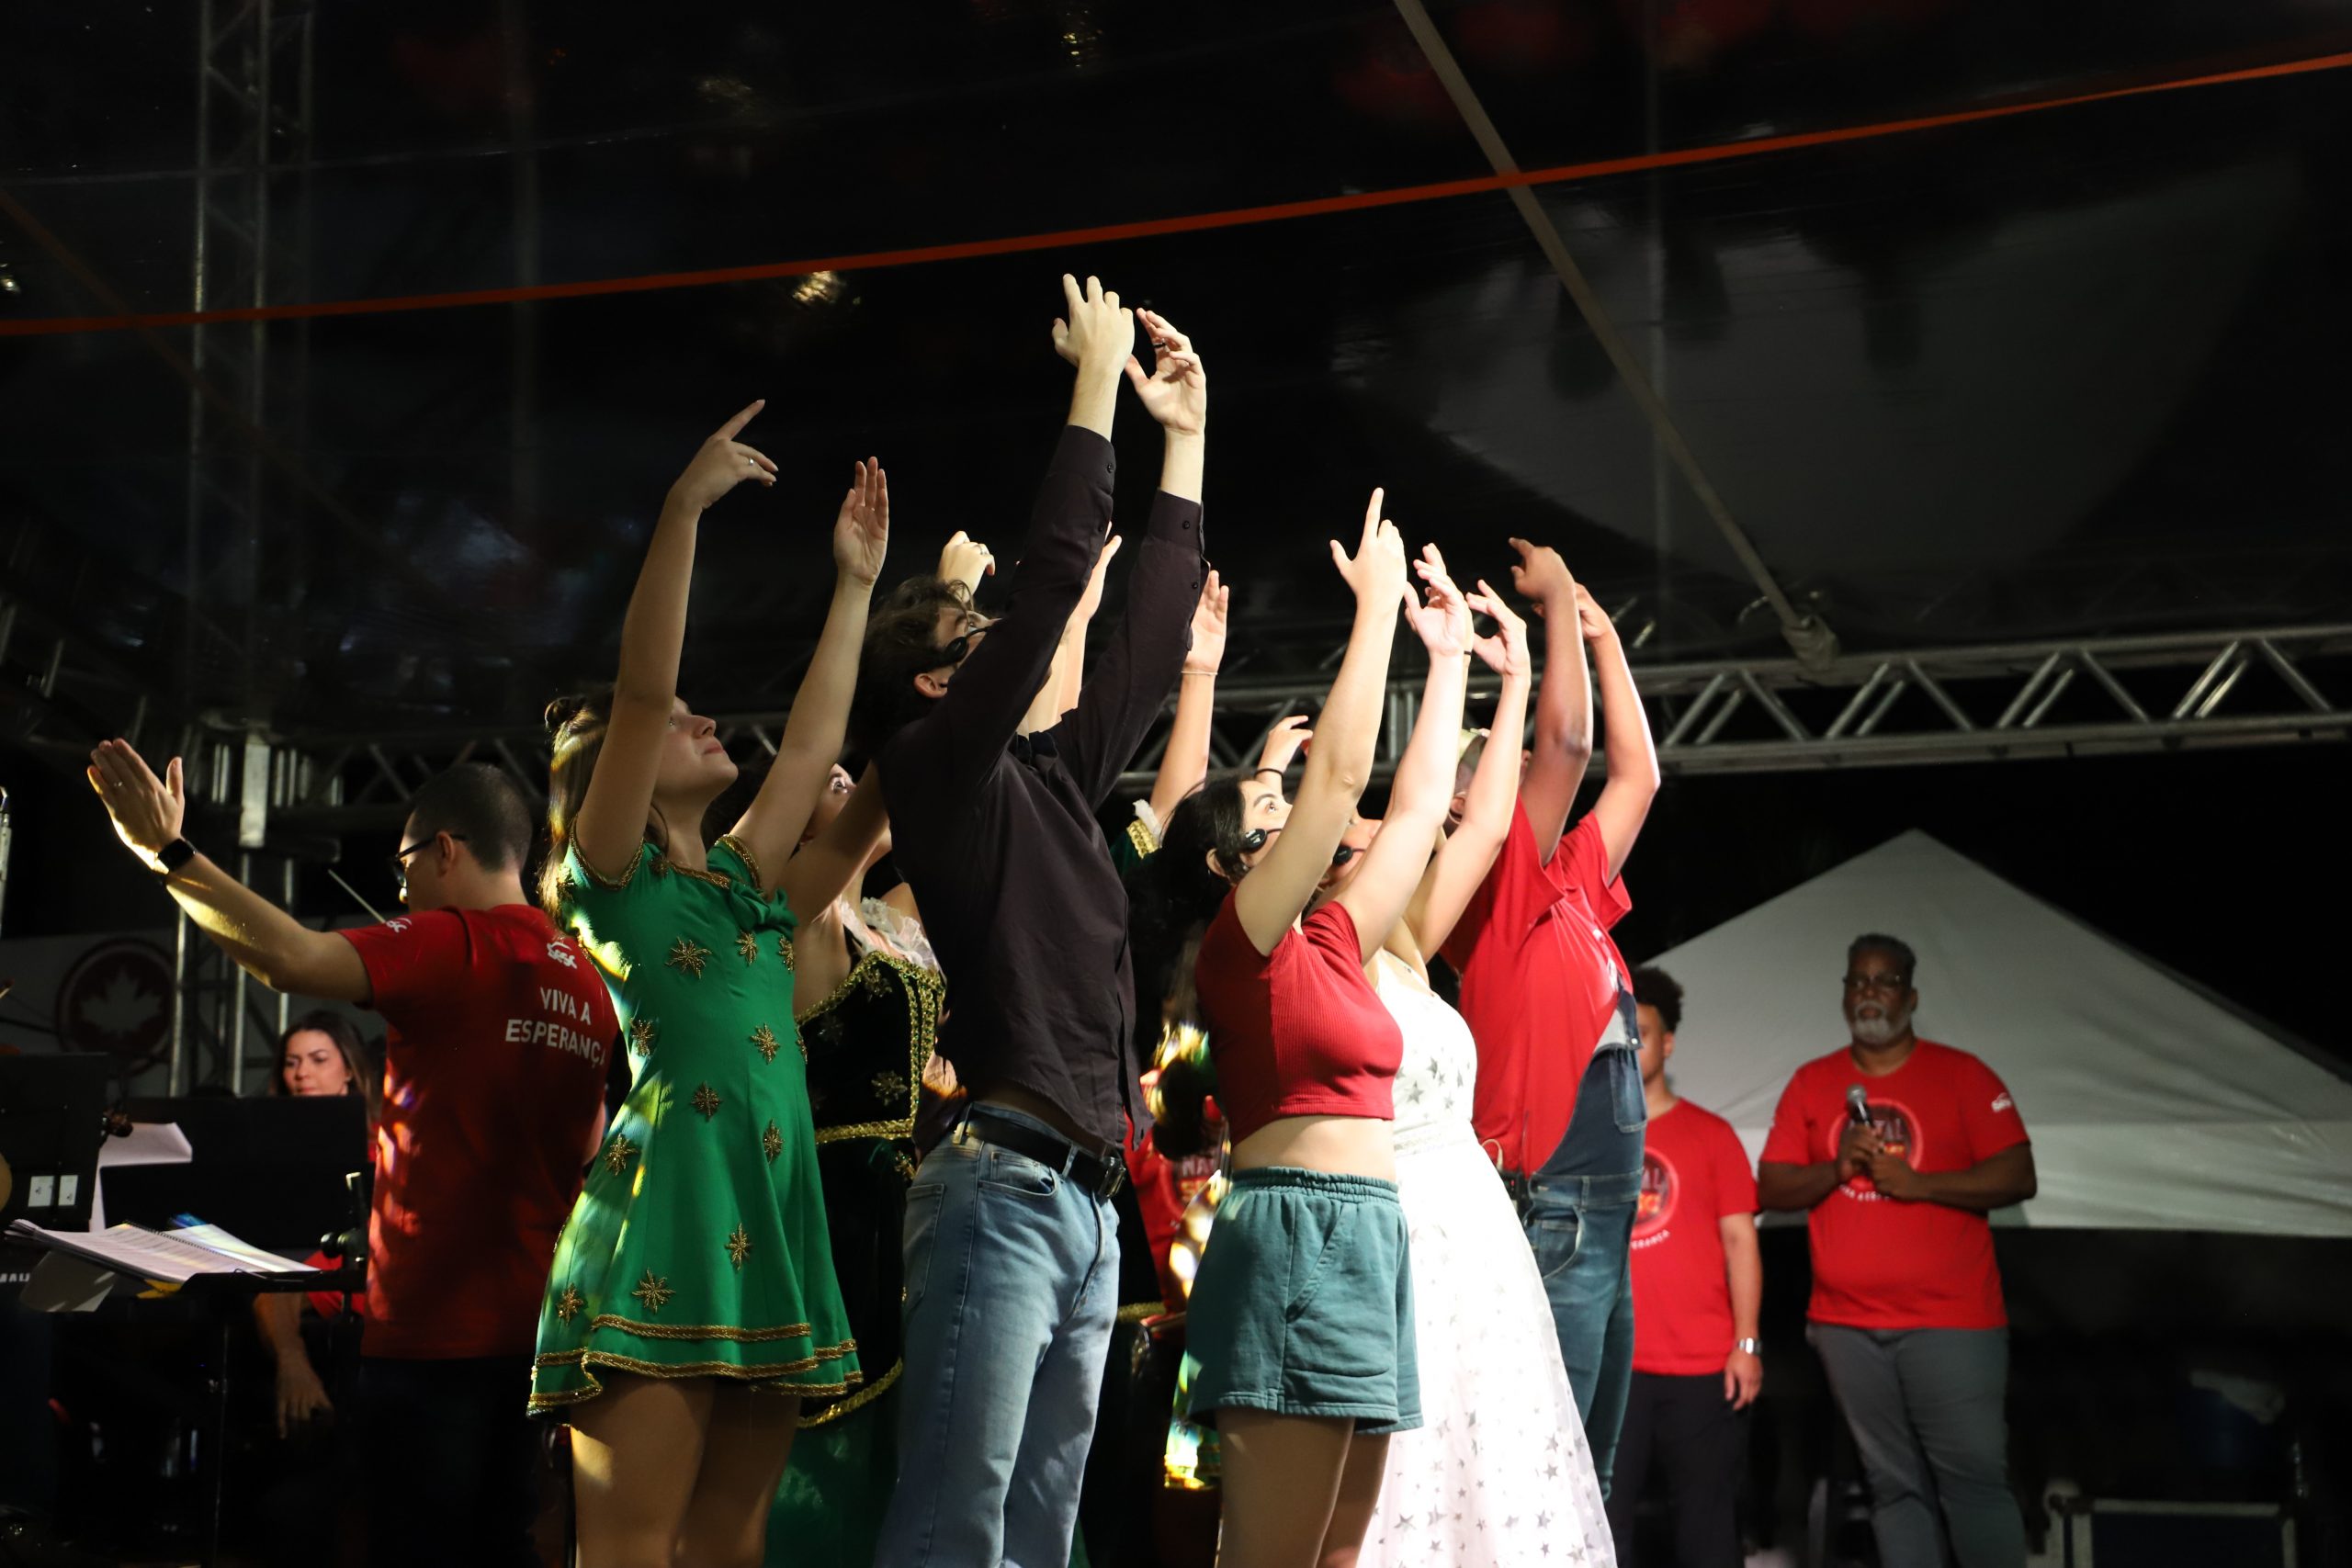 Cantata Sesc “Viva a Esperança” emociona e traz reflexões para Rio das Ostras